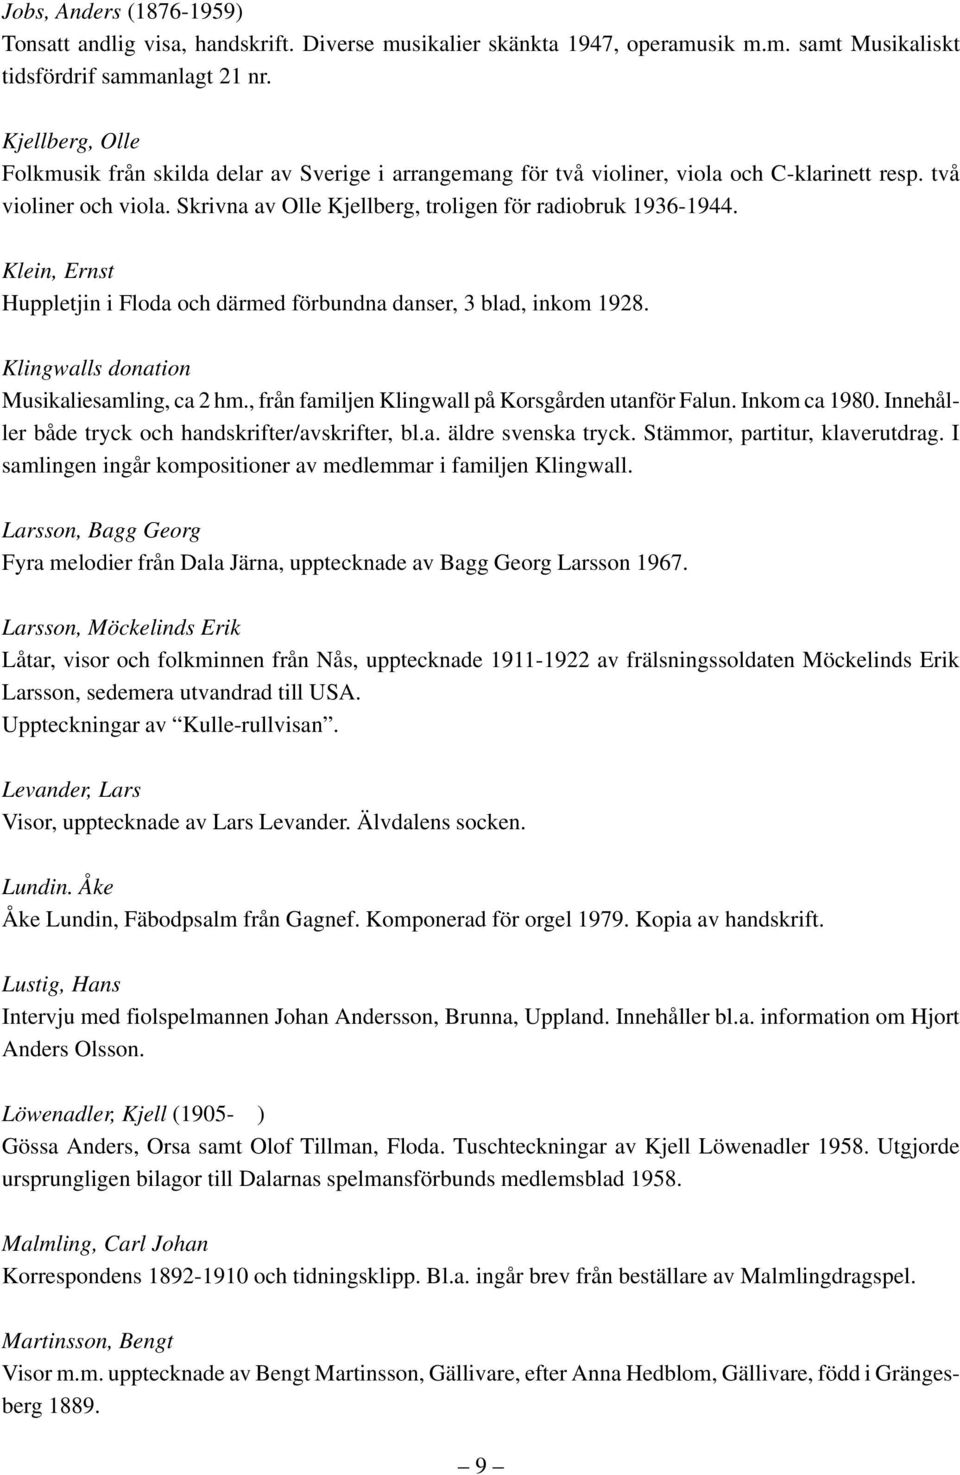 Klein, Ernst Huppletjin i Floda och därmed förbundna danser, 3 blad, inkom 1928. Klingwalls donation Musikaliesamling, ca 2 hm., från familjen Klingwall på Korsgården utanför Falun. Inkom ca 1980.